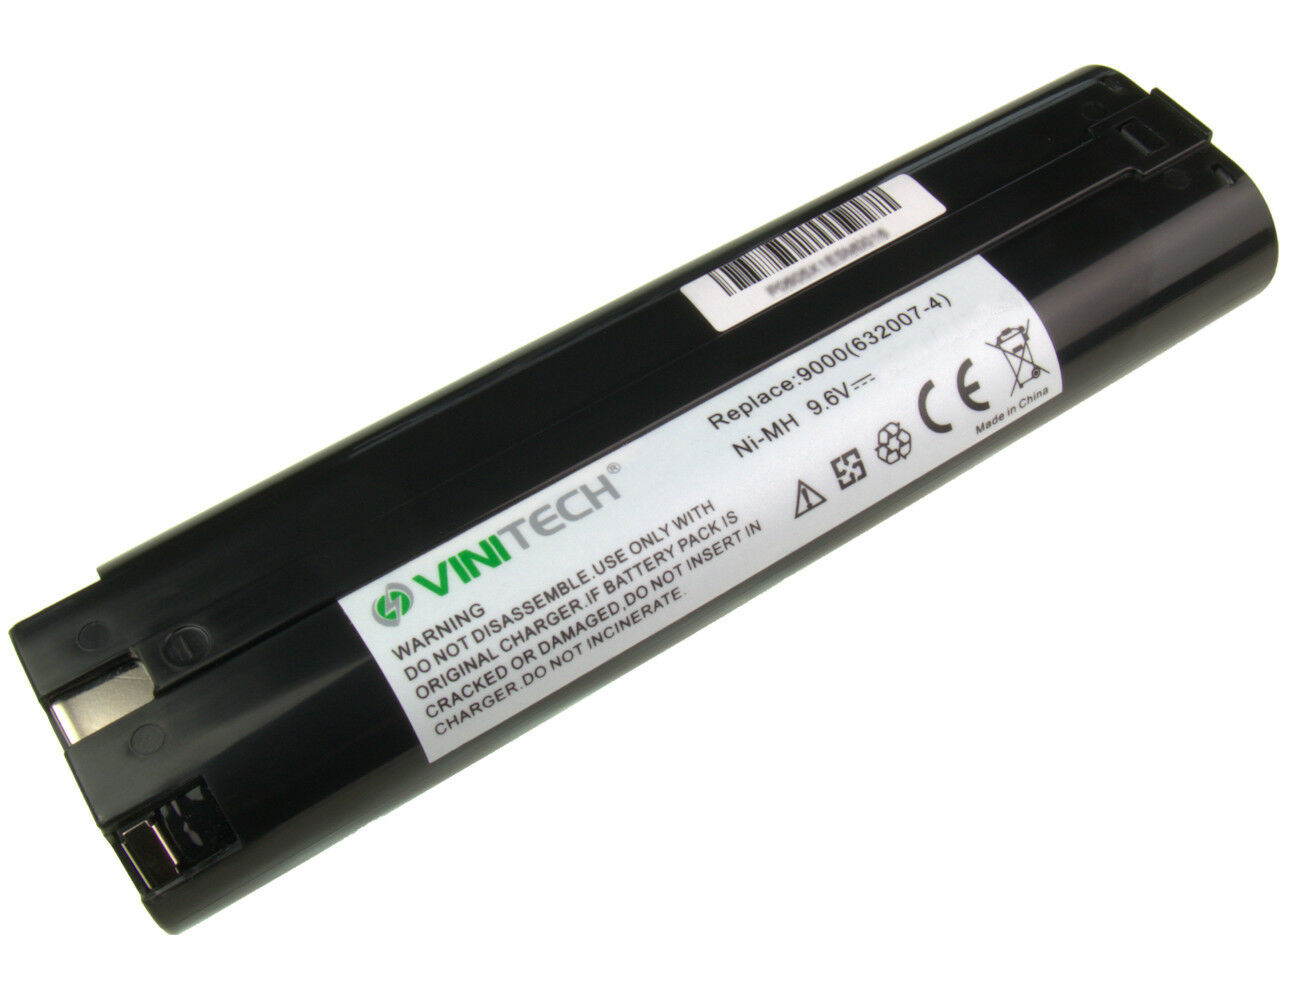 MAKITA T220D,T220DW,UM1690DW,1691D compatible Battery